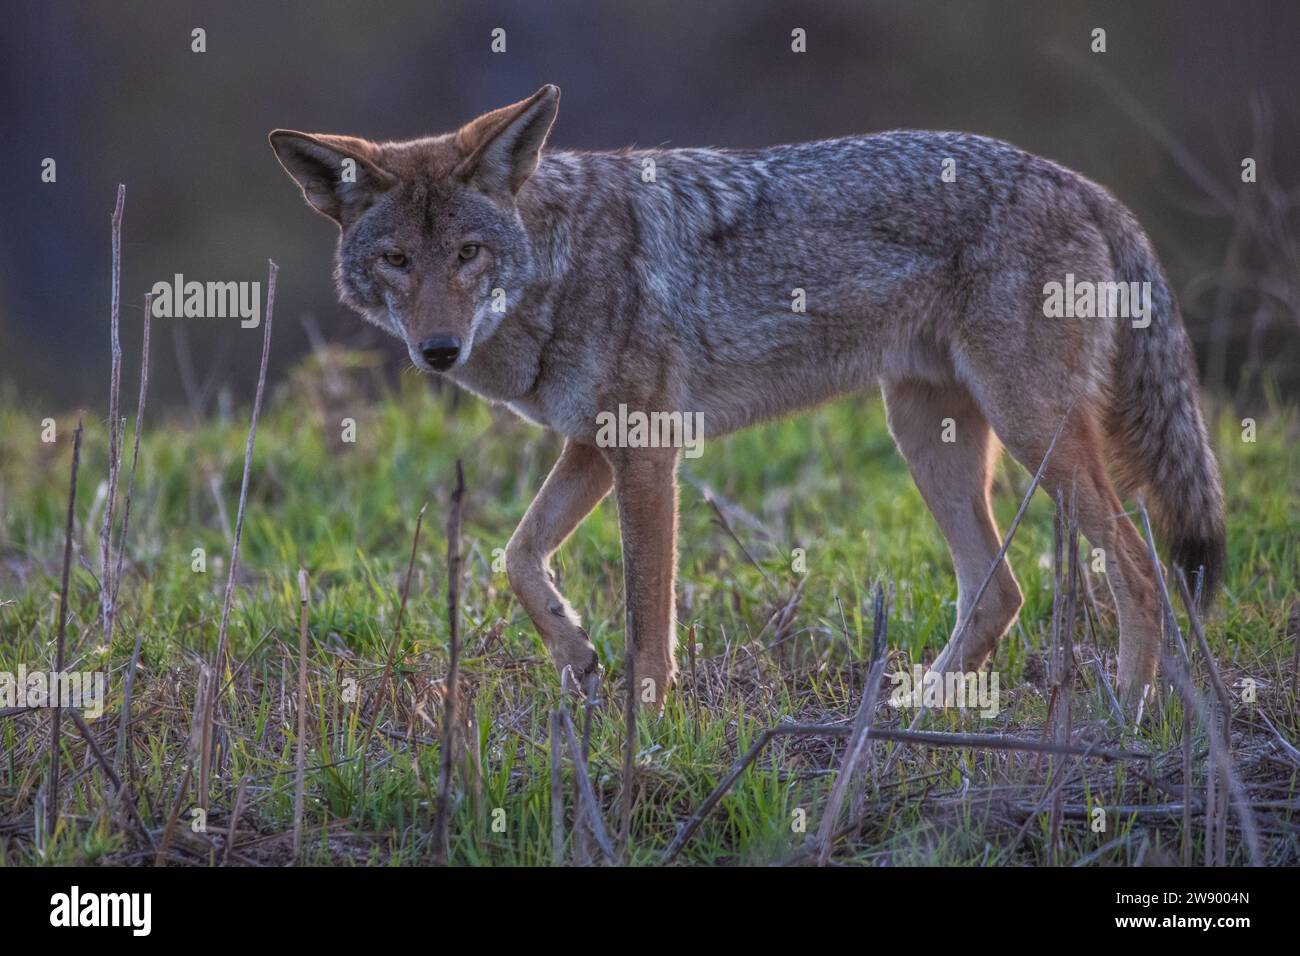 Un coyote sauvage, canis latrans, de la région de la baie de San Francisco en Californie, aux États-Unis. Banque D'Images